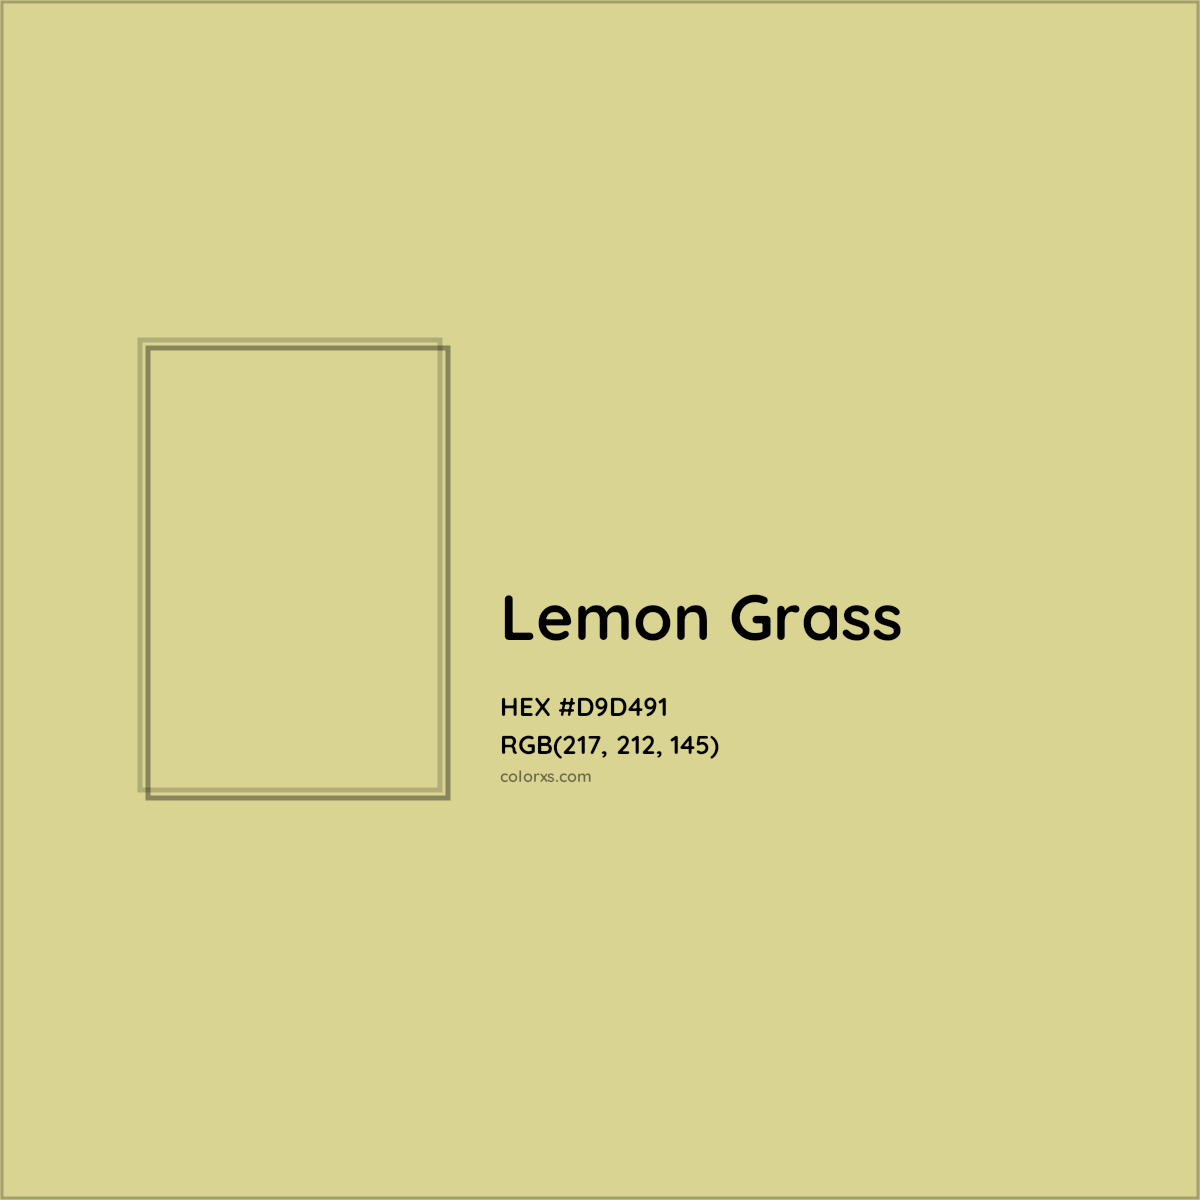 HEX #D9D491 Lemon Grass Other - Color Code